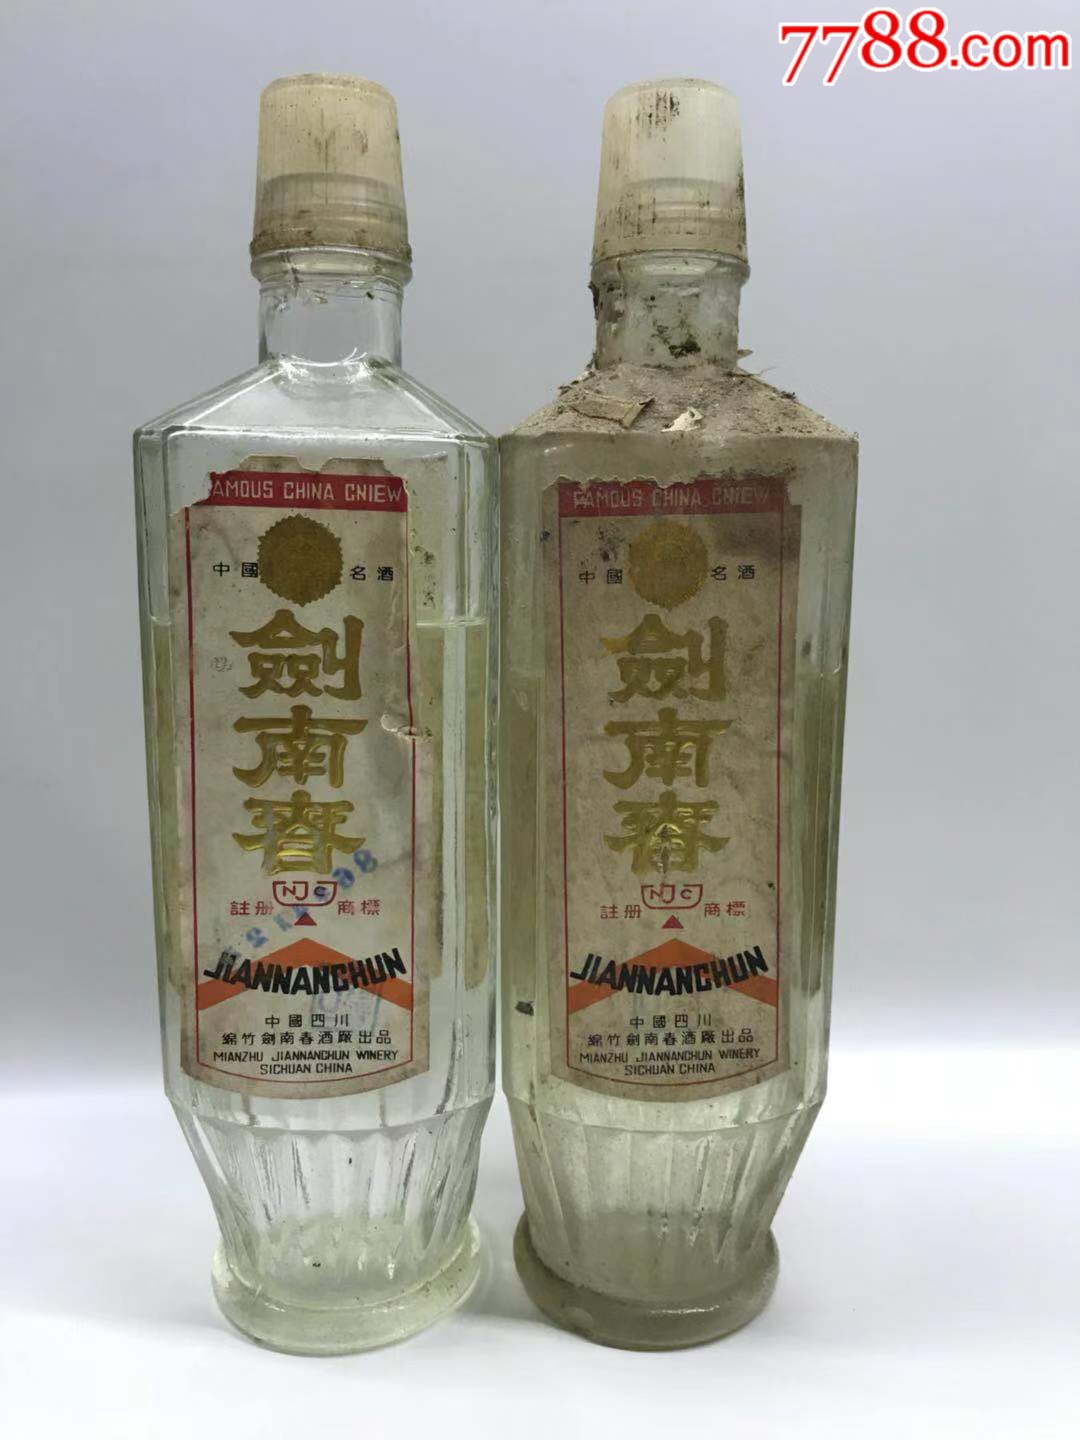 86年代,四川剑南春两瓶,只卖瓶,酒白送,品如图,请看好